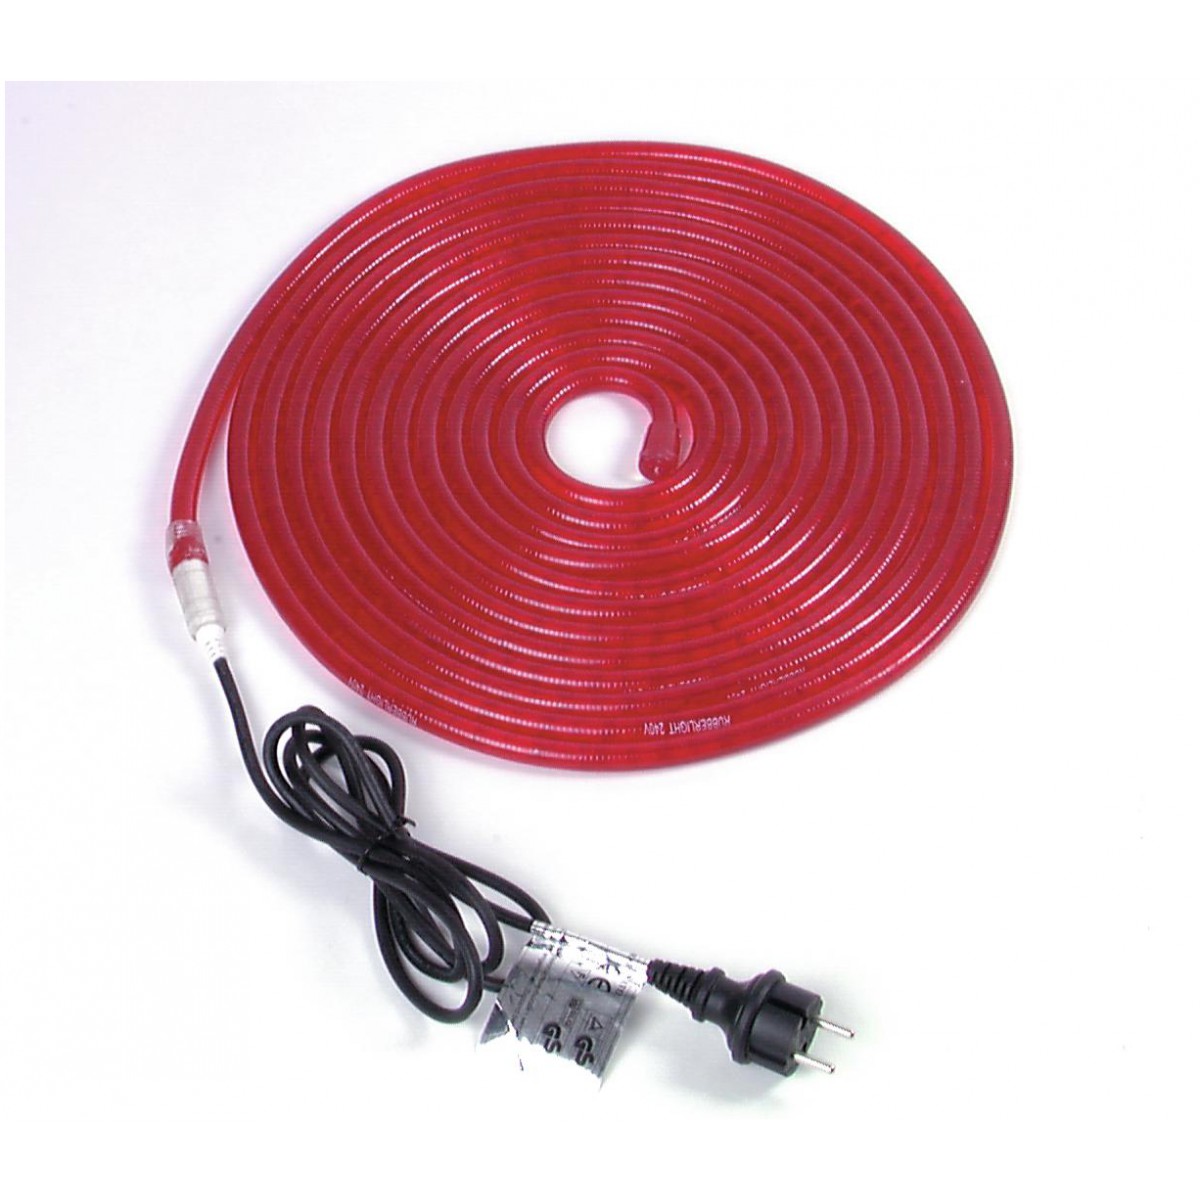 Světelný kabel, červený, 5m